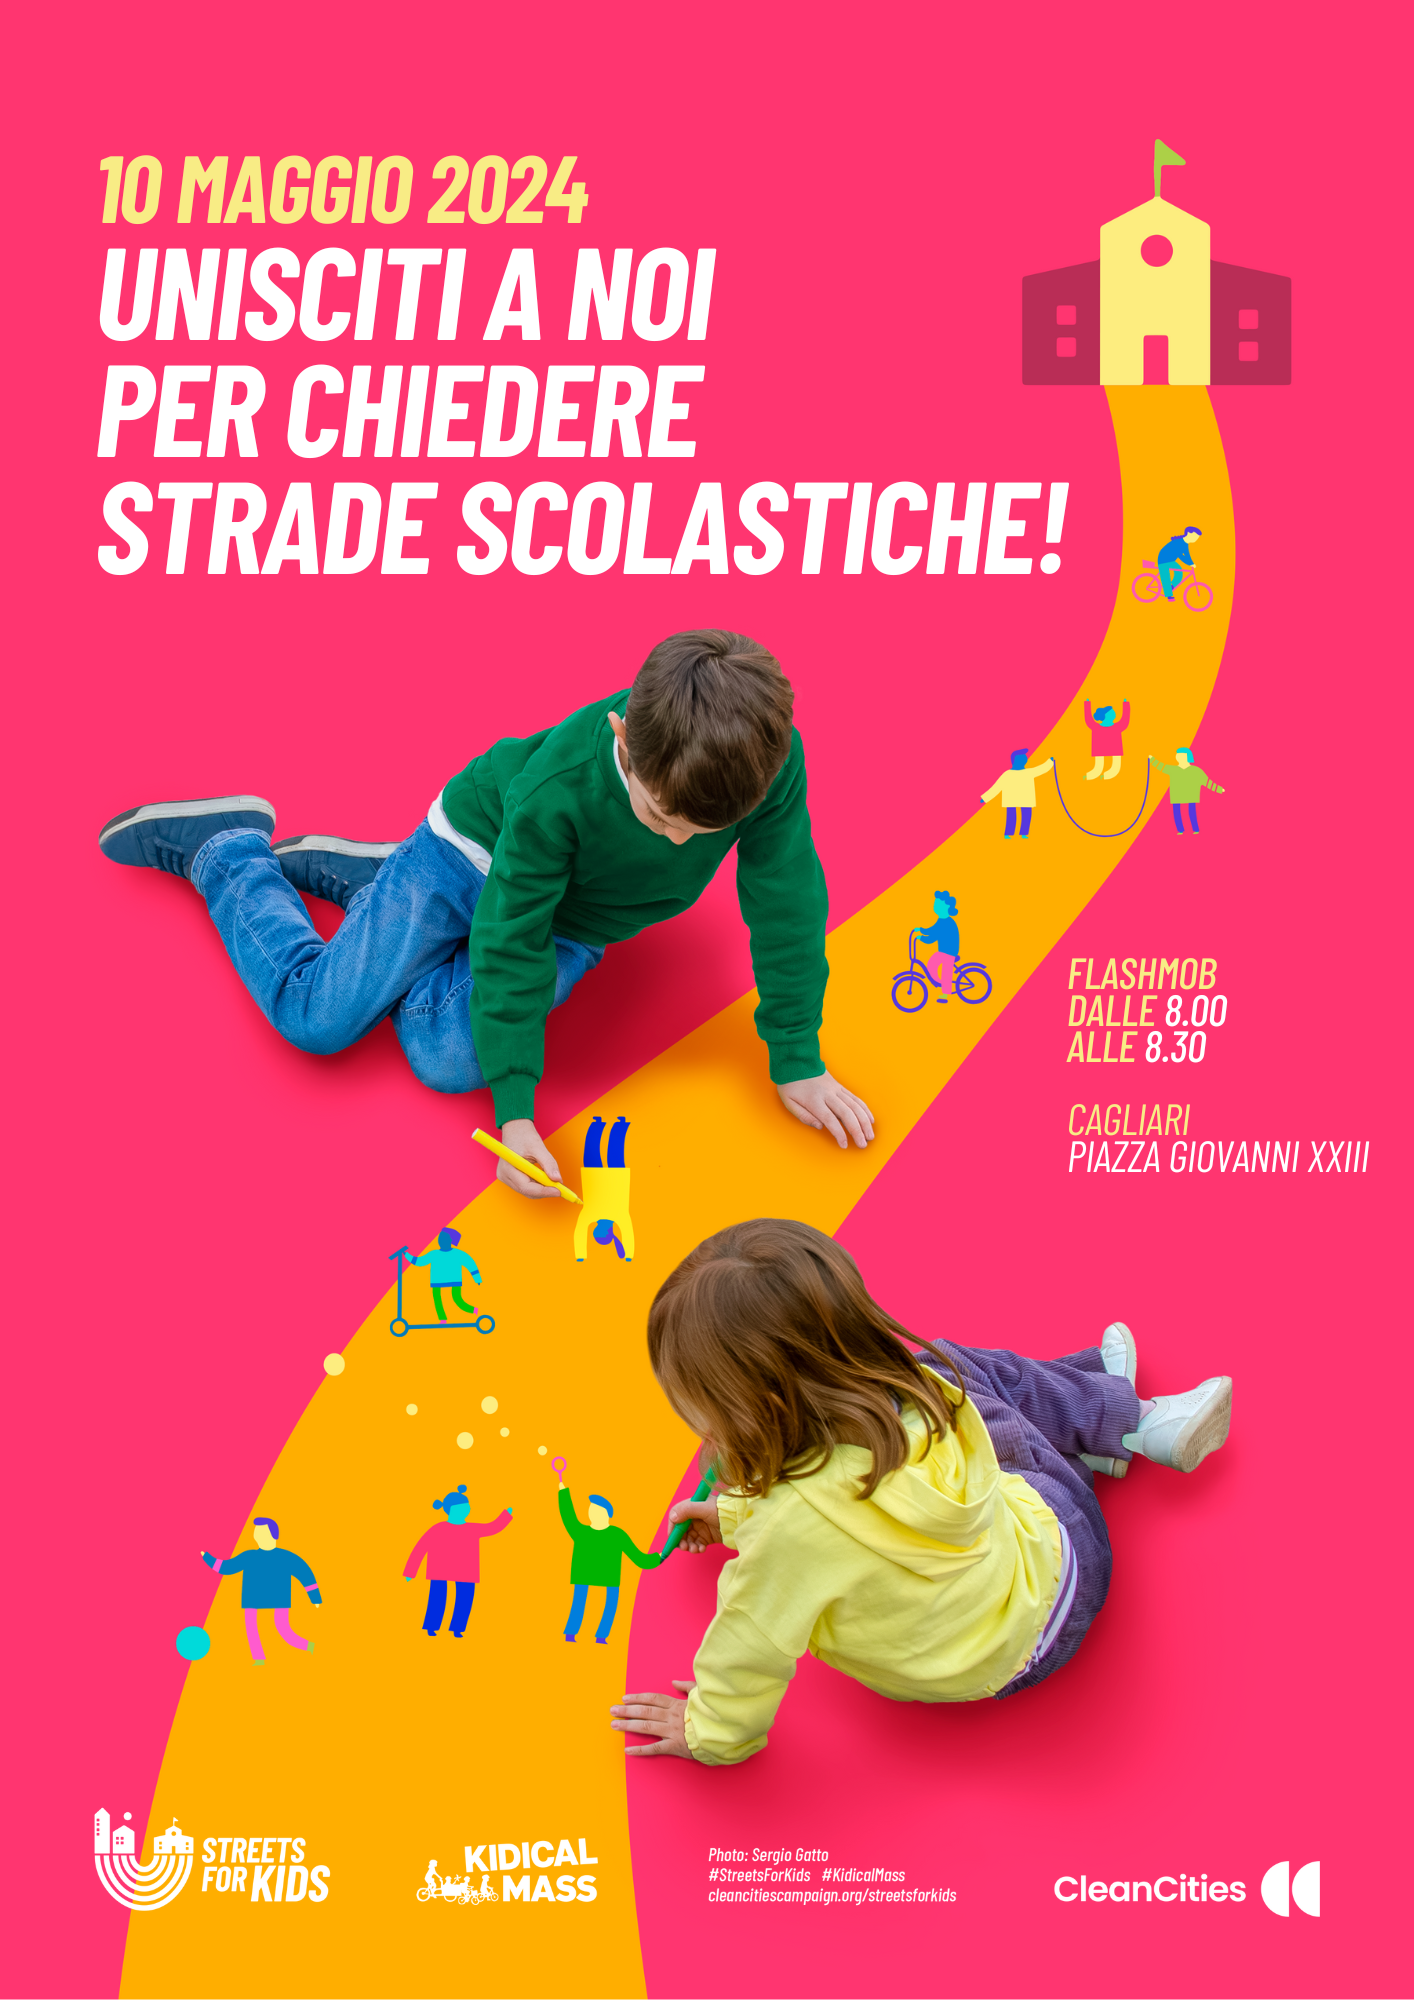 Percorsi casa-scuola sicuri: il 10 maggio a Cagliari flashmob “Streets4Kids”